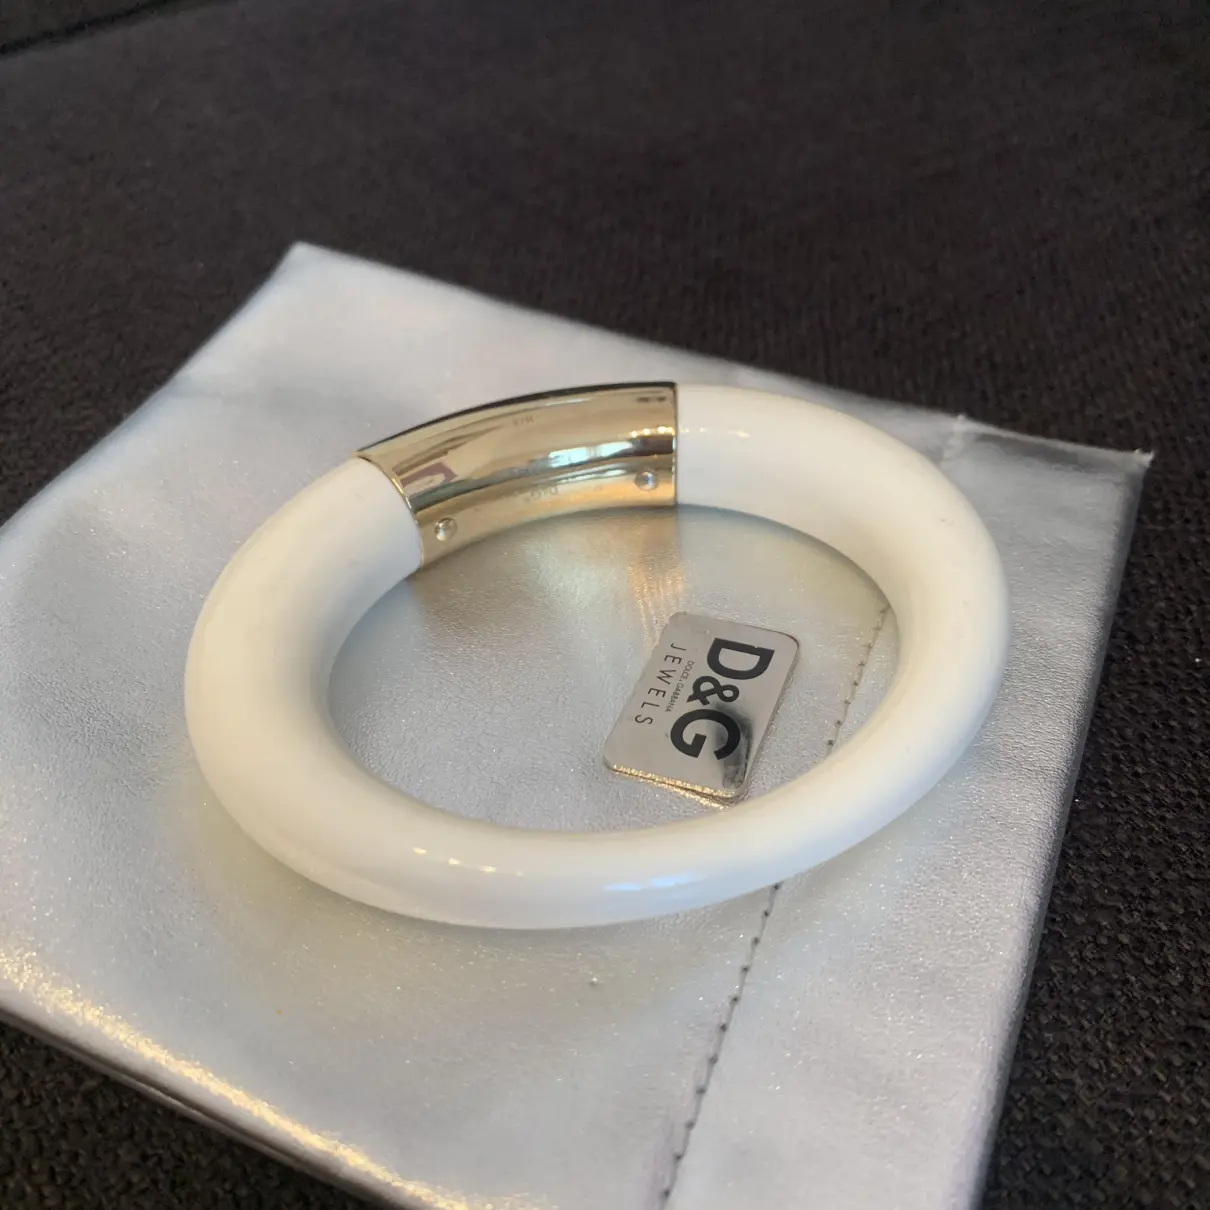 Buy D&G White Plastic Bracelet online